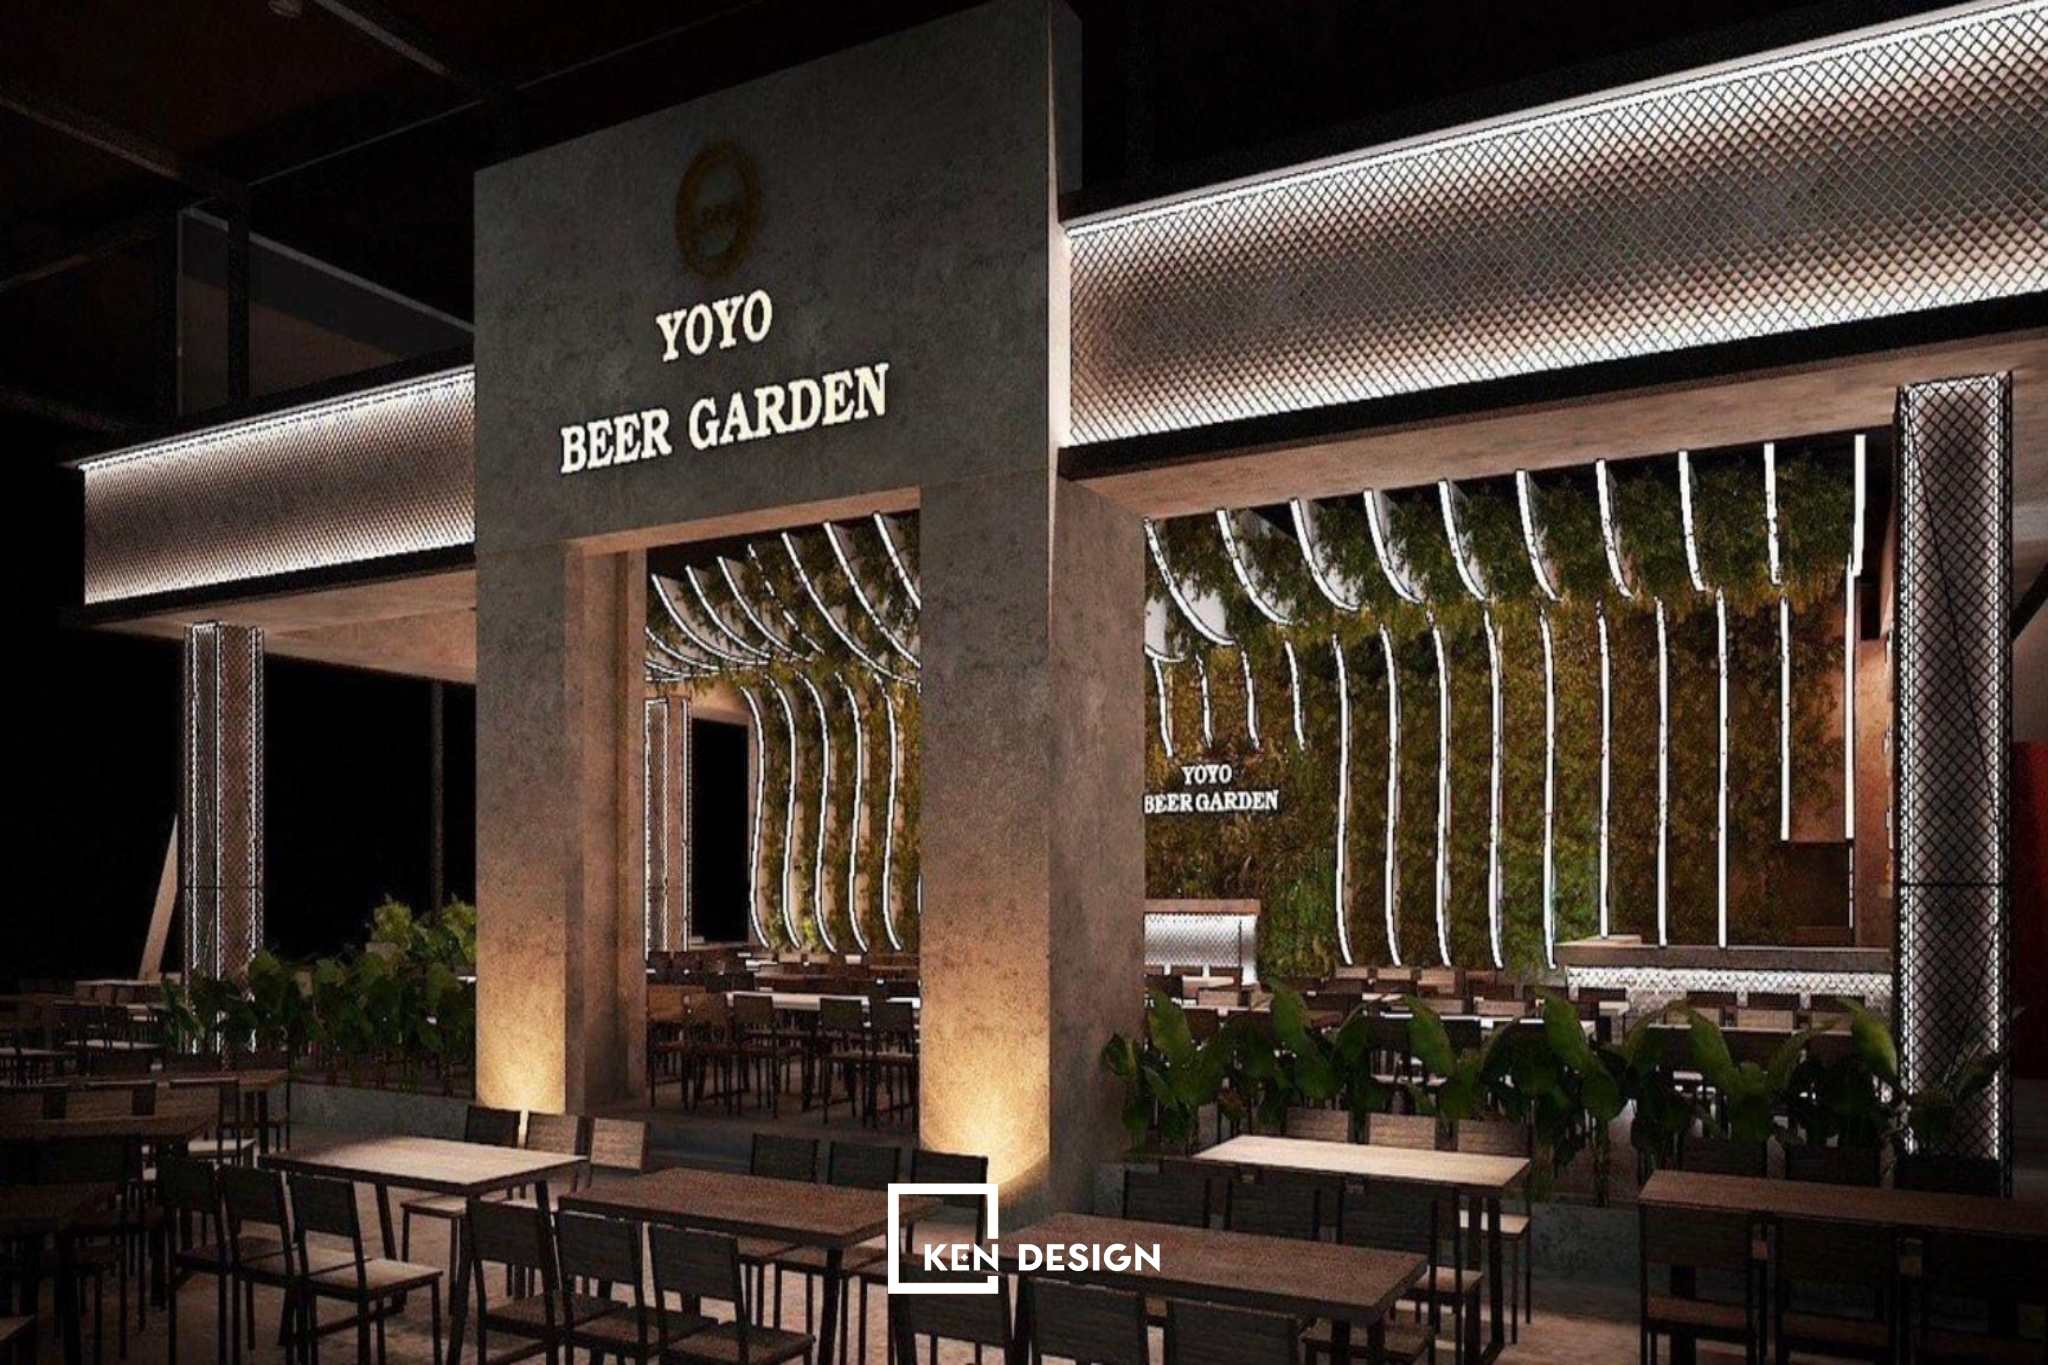 Thiết kế nhà hàng Beer Garden ấn tượng